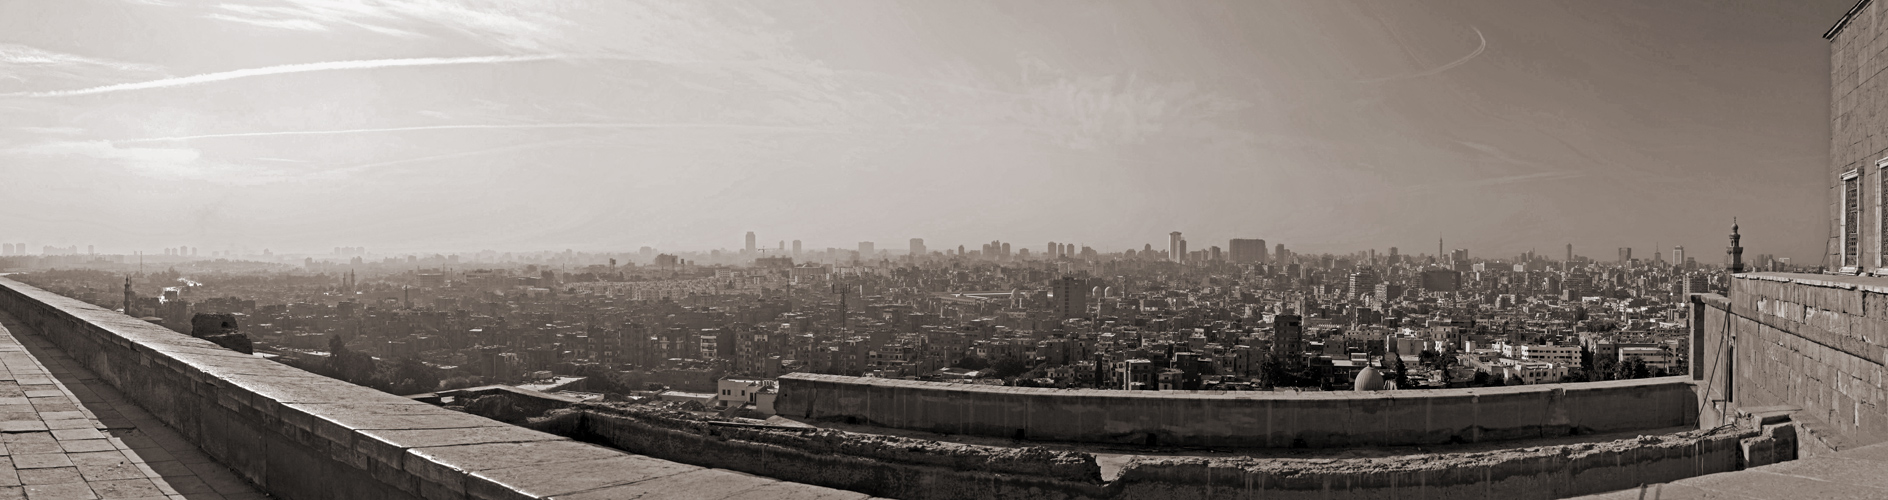 Kairo - ein Moloch